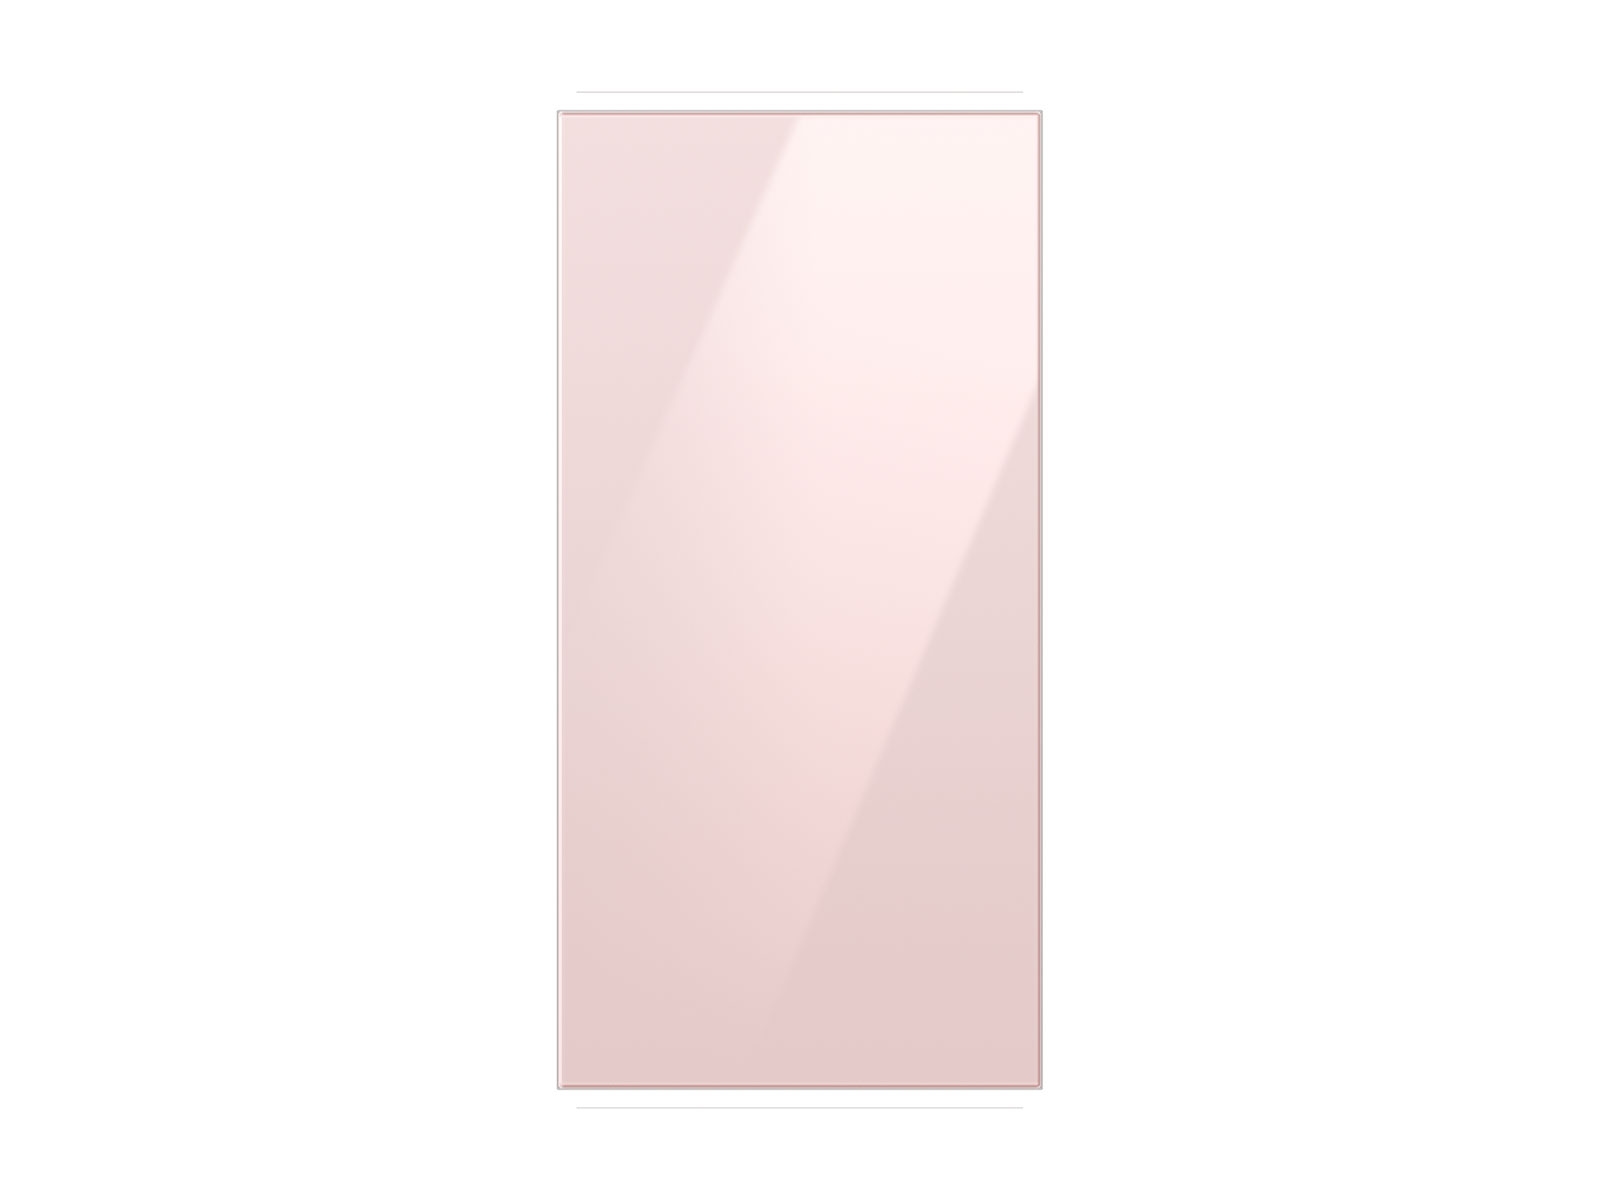 Photos - Fridge Samsung Bespoke 4-Door French Door Refrigerator Panel in Pink Glass - Top 